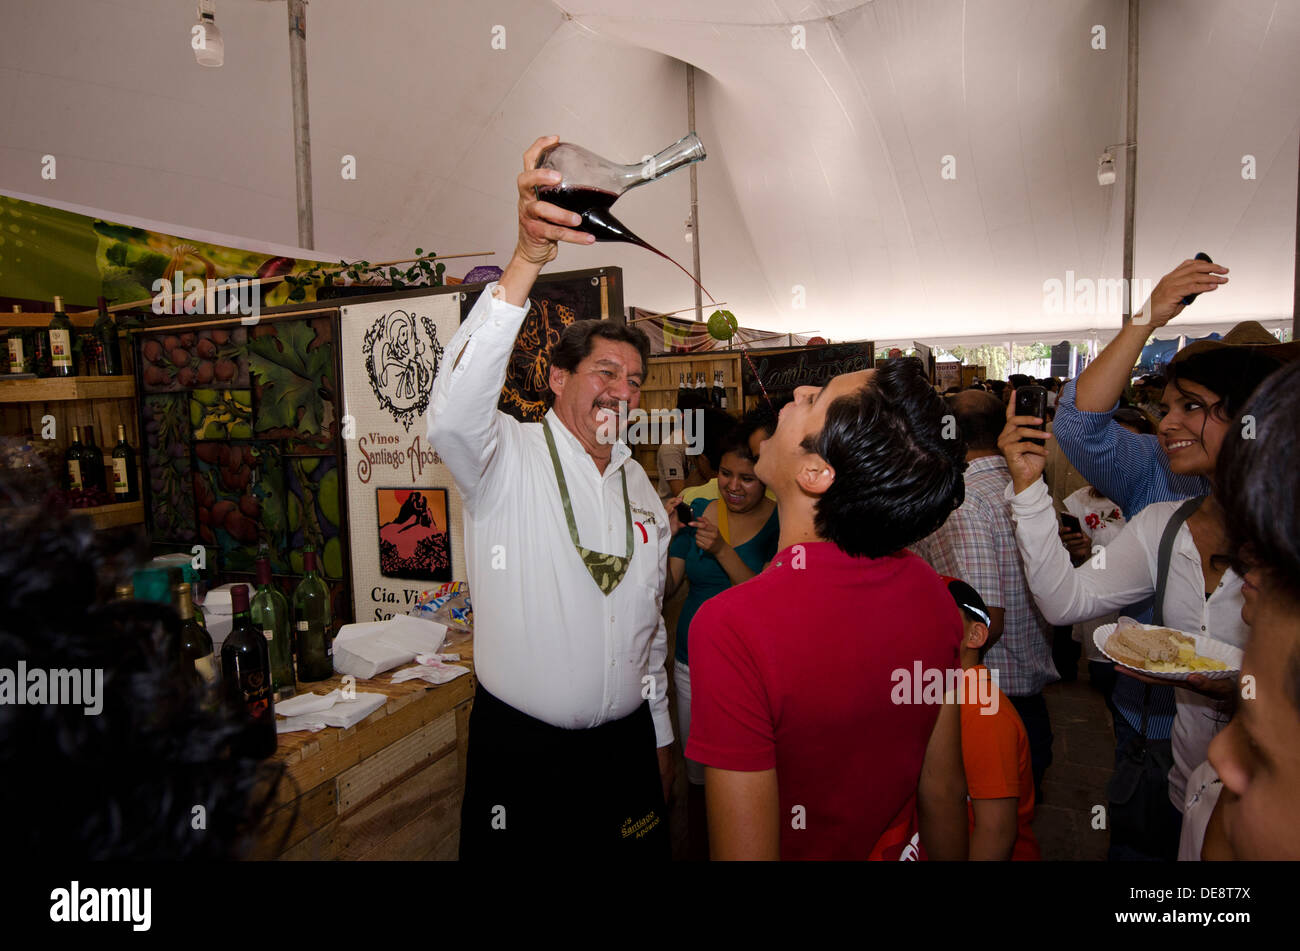 L'homme de verser le vin dans la bouche un autre homme au Festival National de fromage et de vin à Tequisquiapan, Queretero au Mexique Banque D'Images